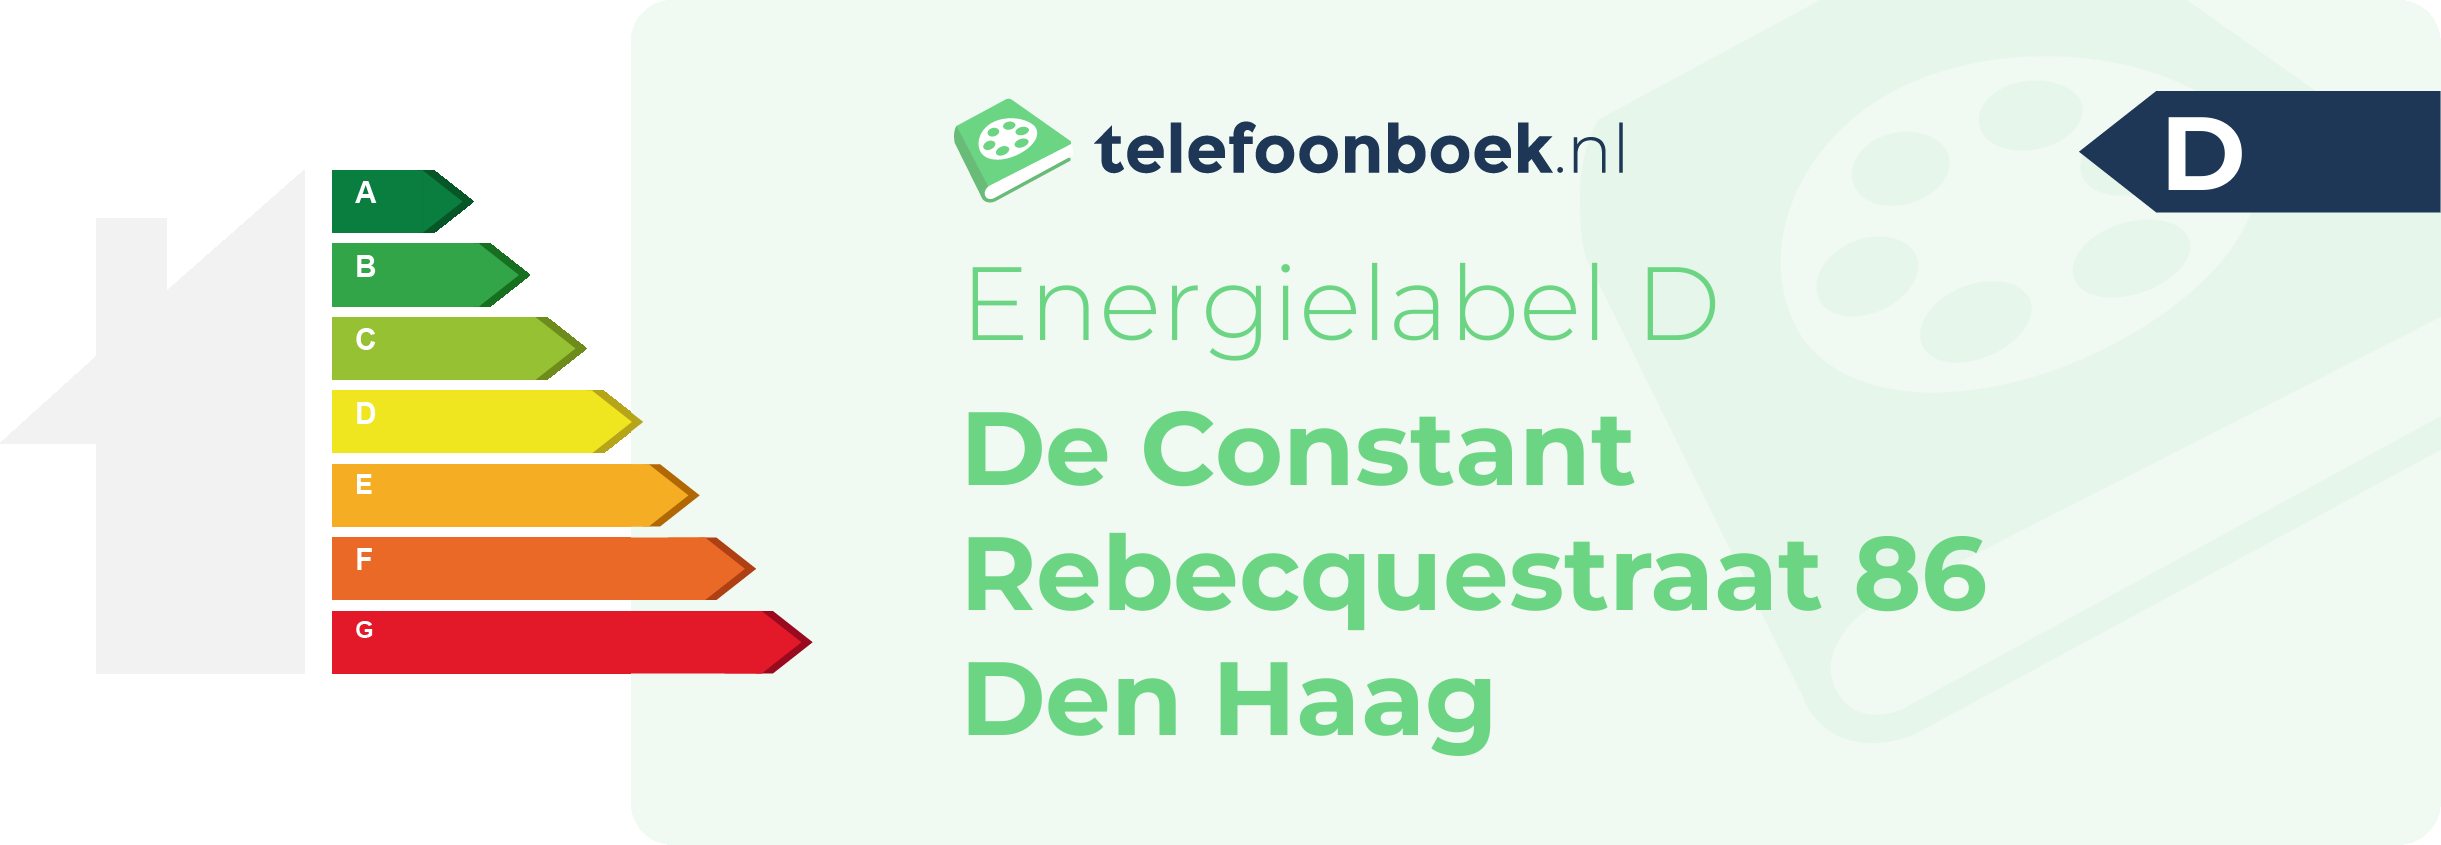 Energielabel De Constant Rebecquestraat 86 Den Haag